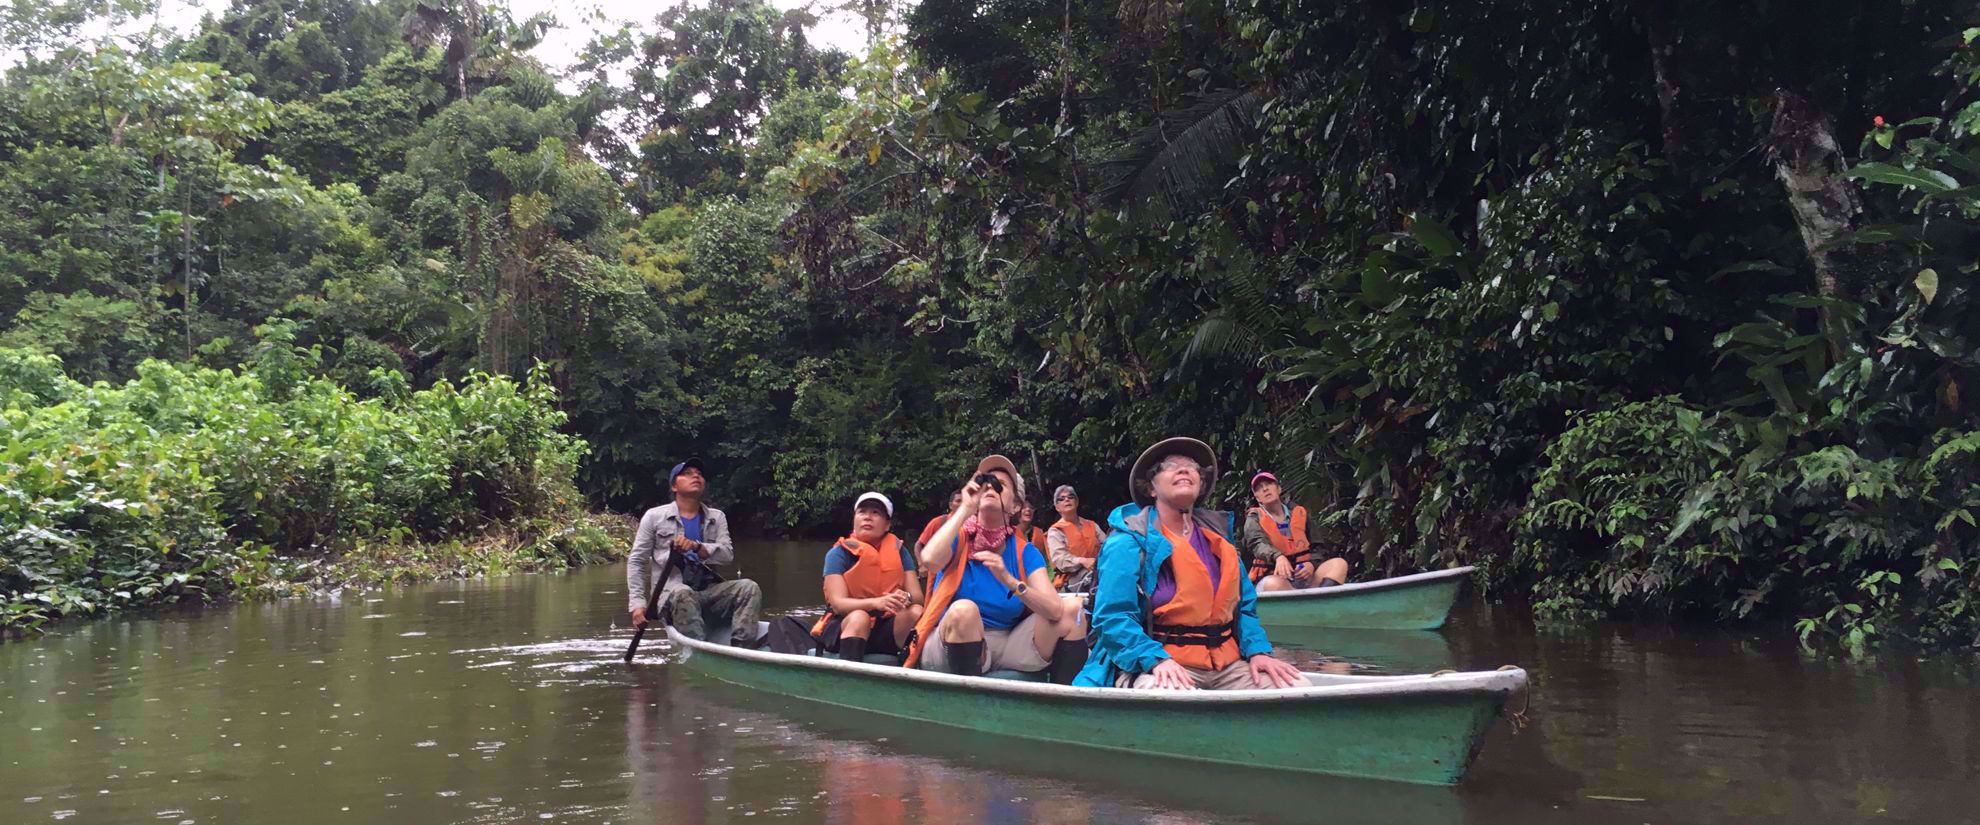 group travel tour canoe through amazon river